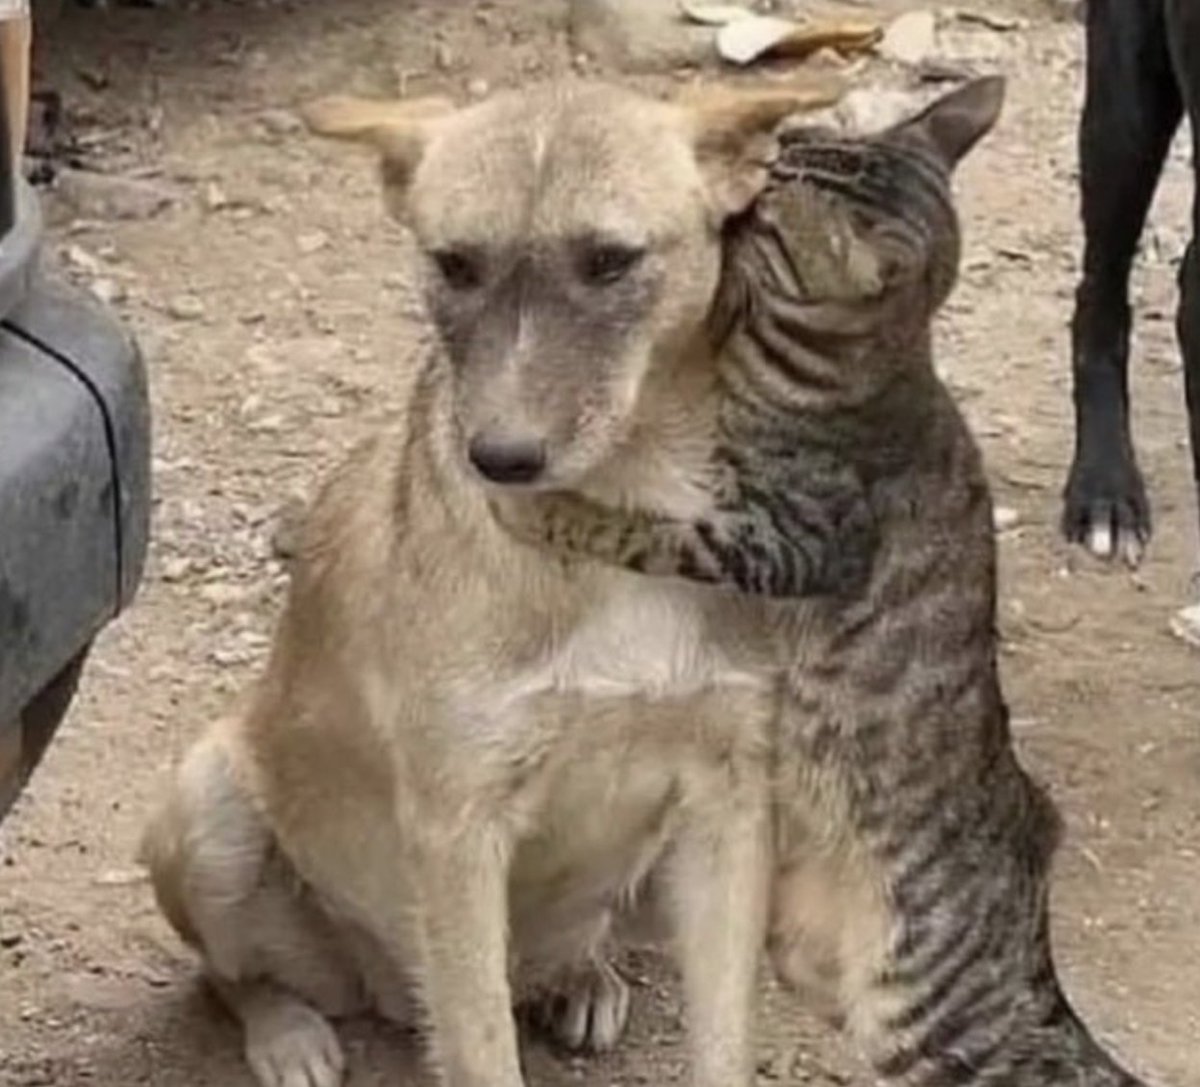 そういえばトルコシリア大地震の時も
犬と猫が寄り添ってましたね😢